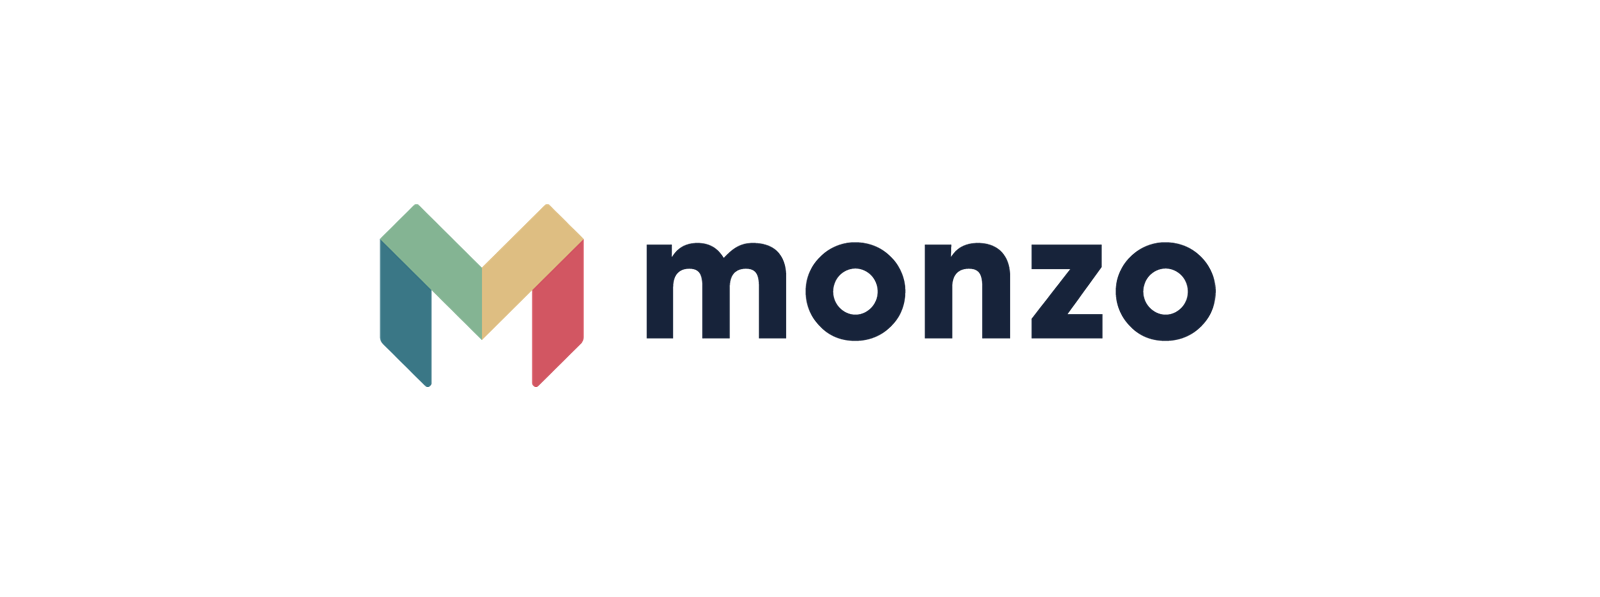 monzo-logo